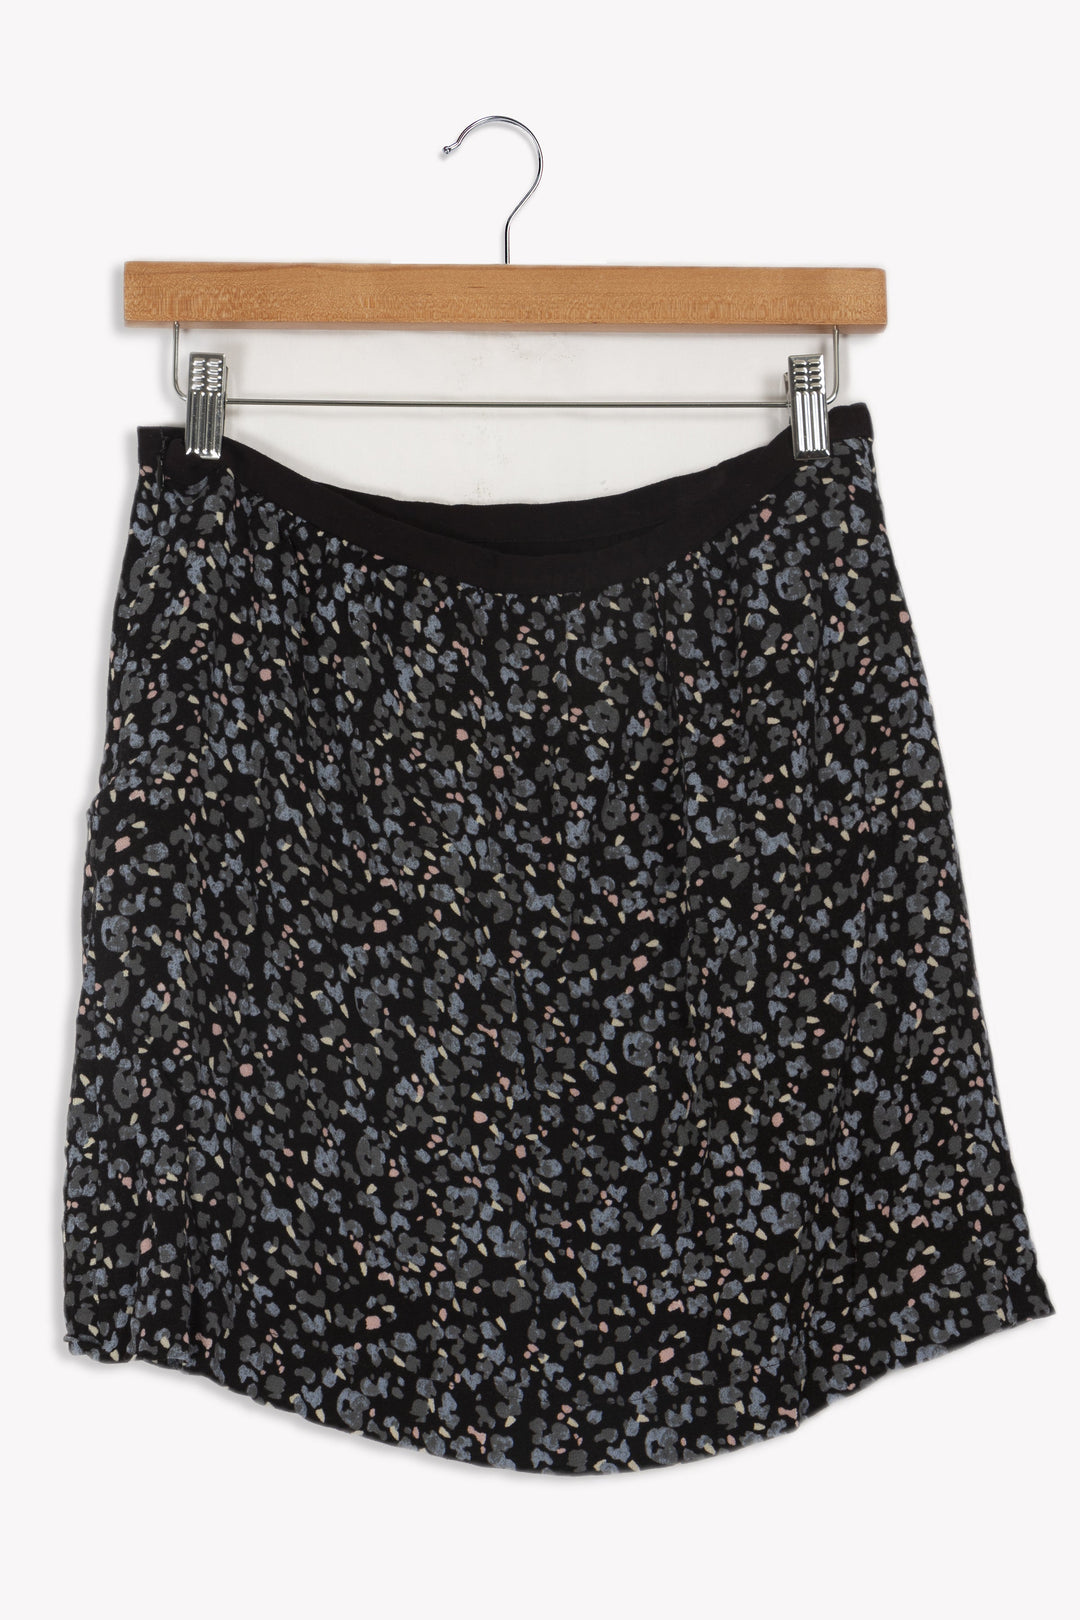 Black patterned skirt - 38